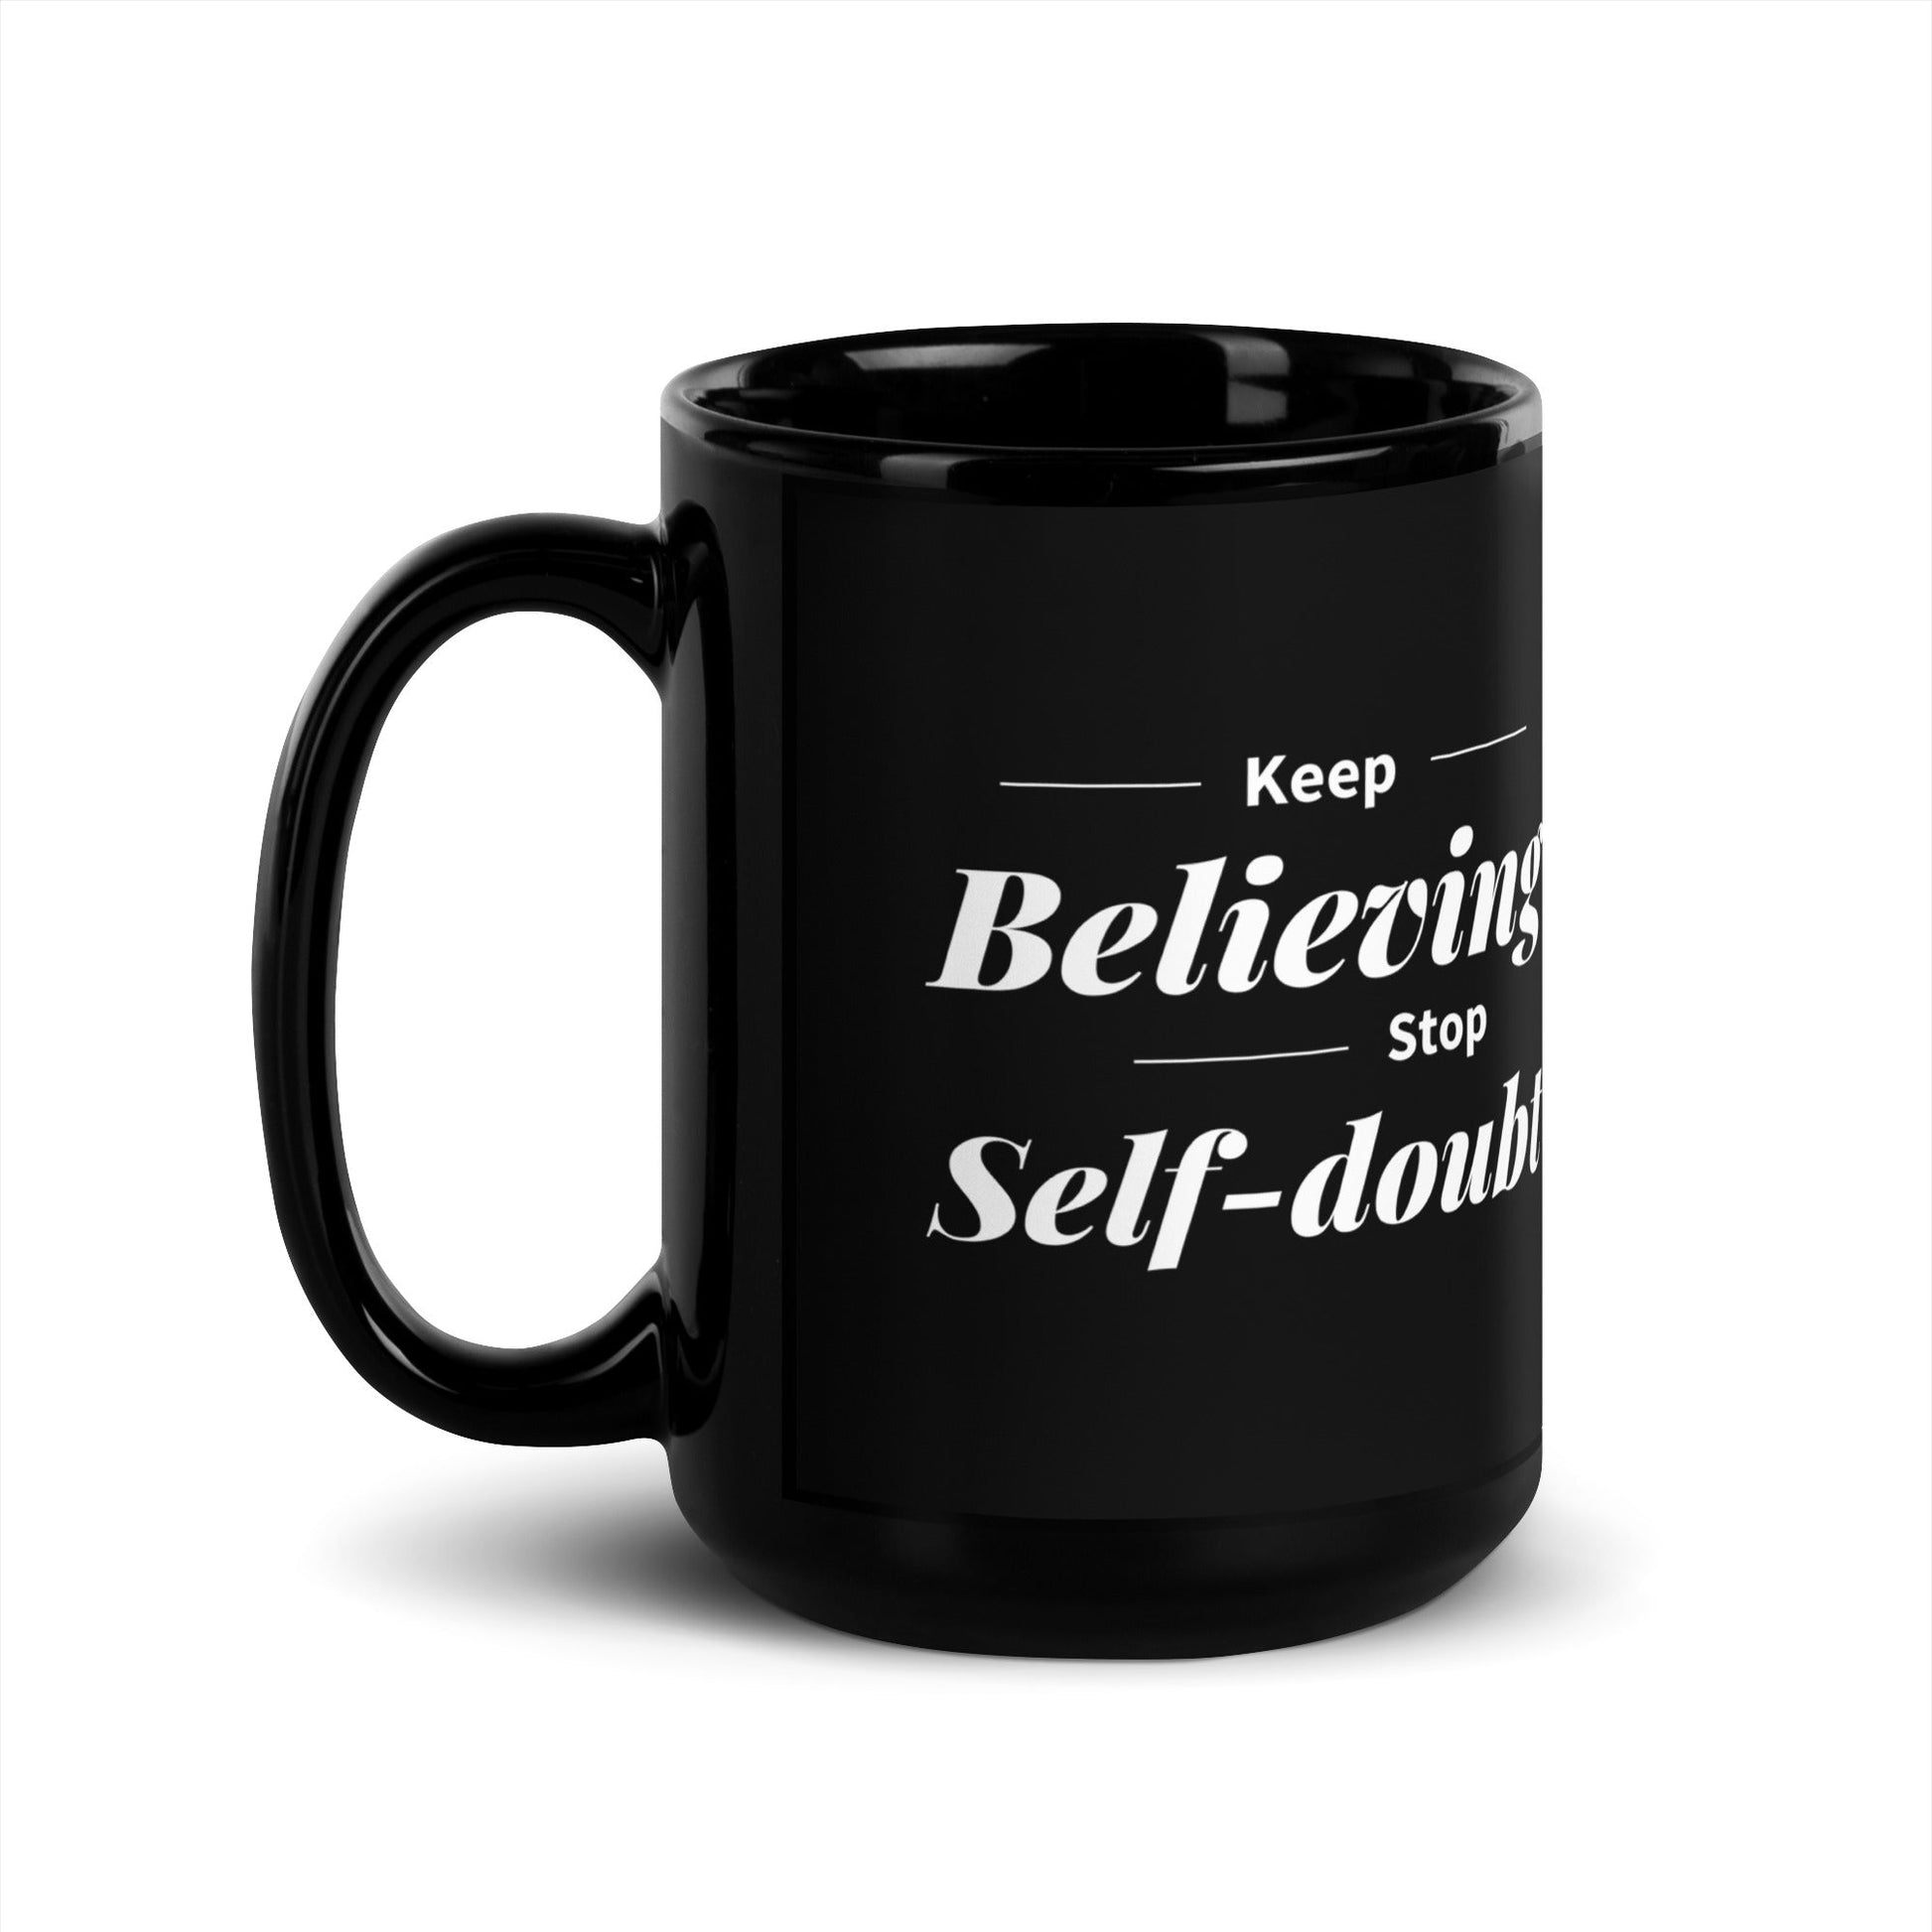 Keep Believing Coffee Mug Black Glossy - Motivational Wonders